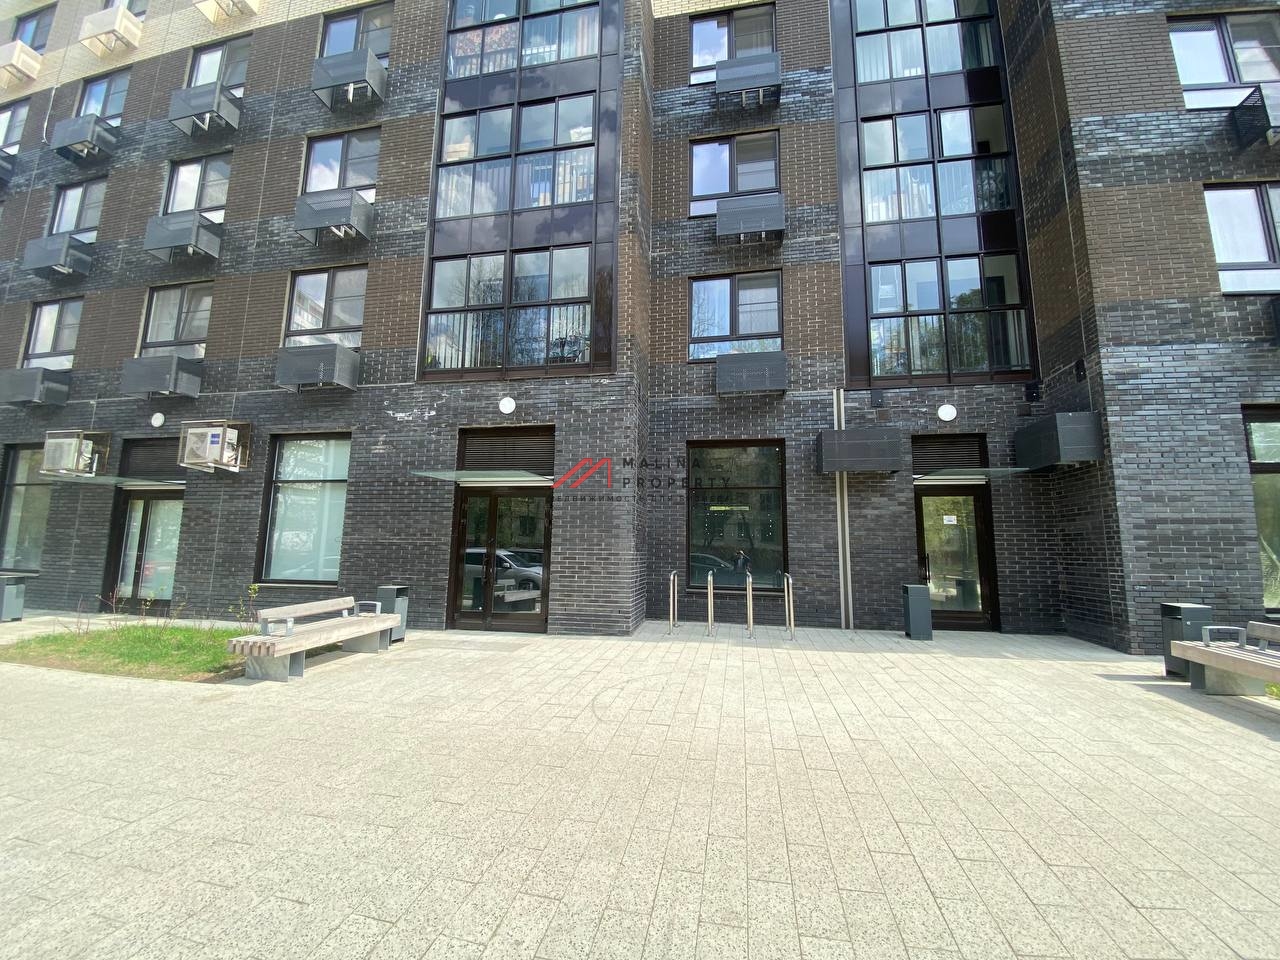 Продажа помещения с арендаторами на Щелковской